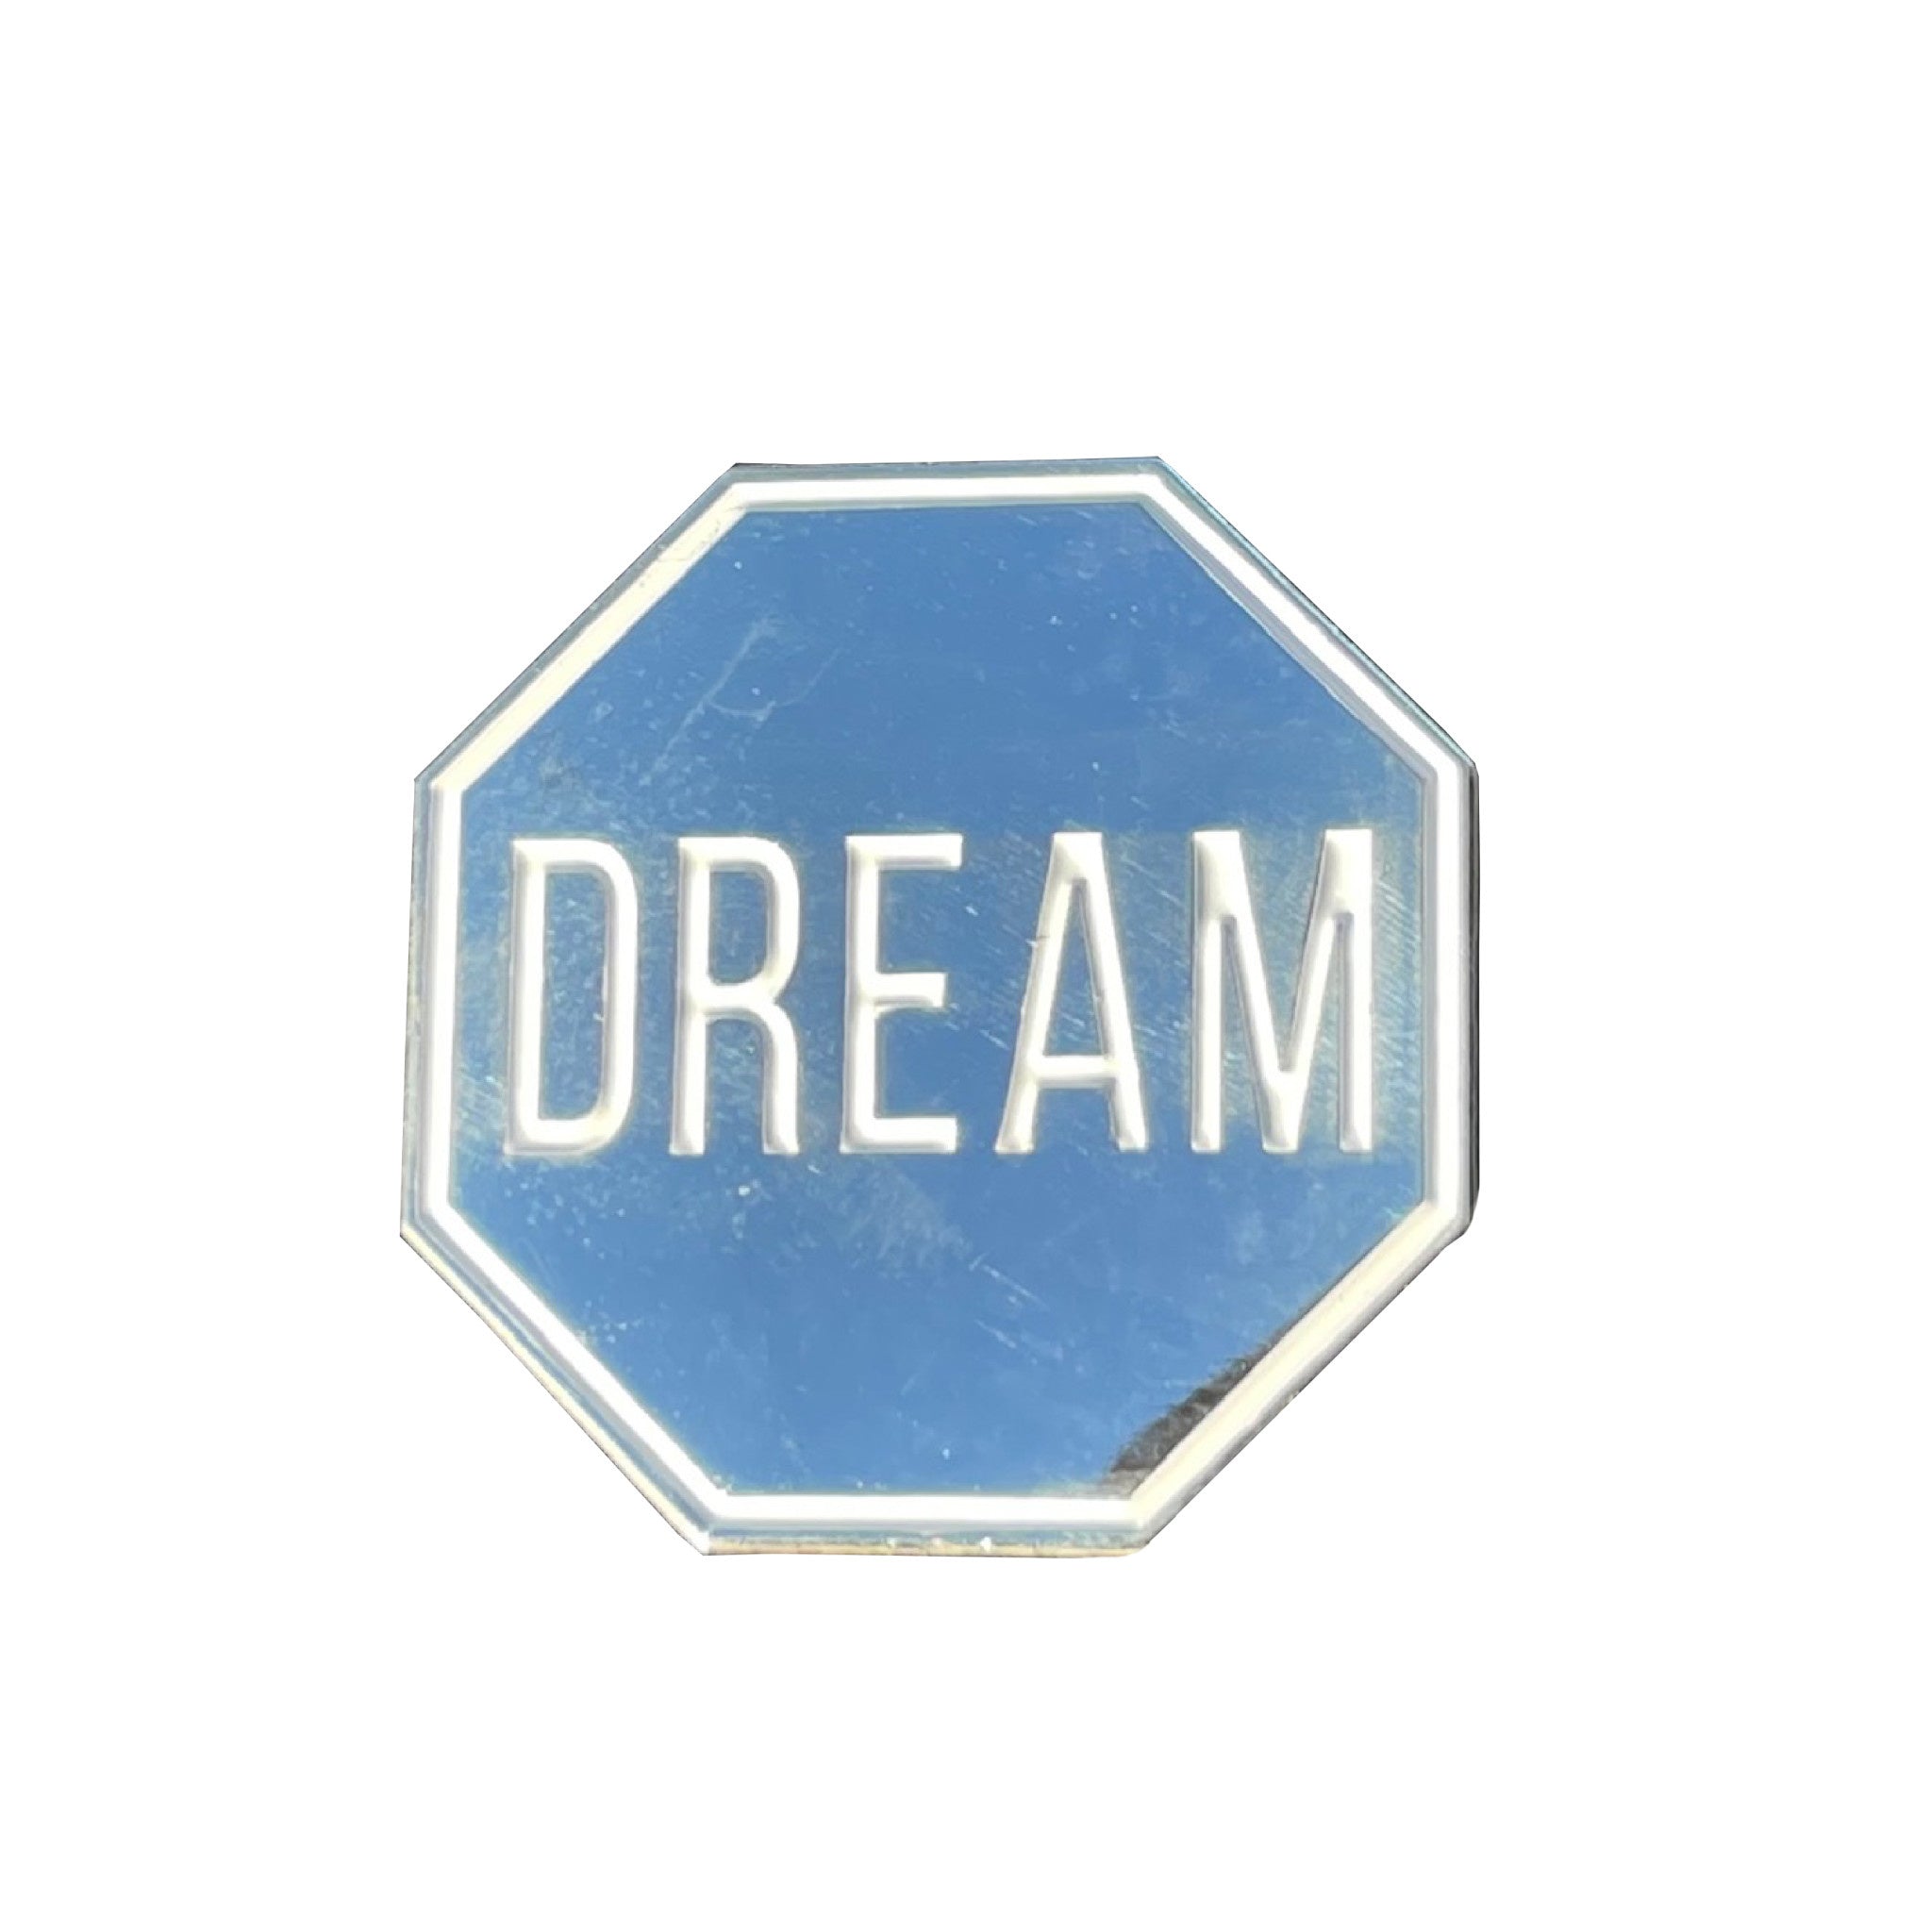 Scott Froschauer Mirror Dream Pin - Wynwood Walls Shop